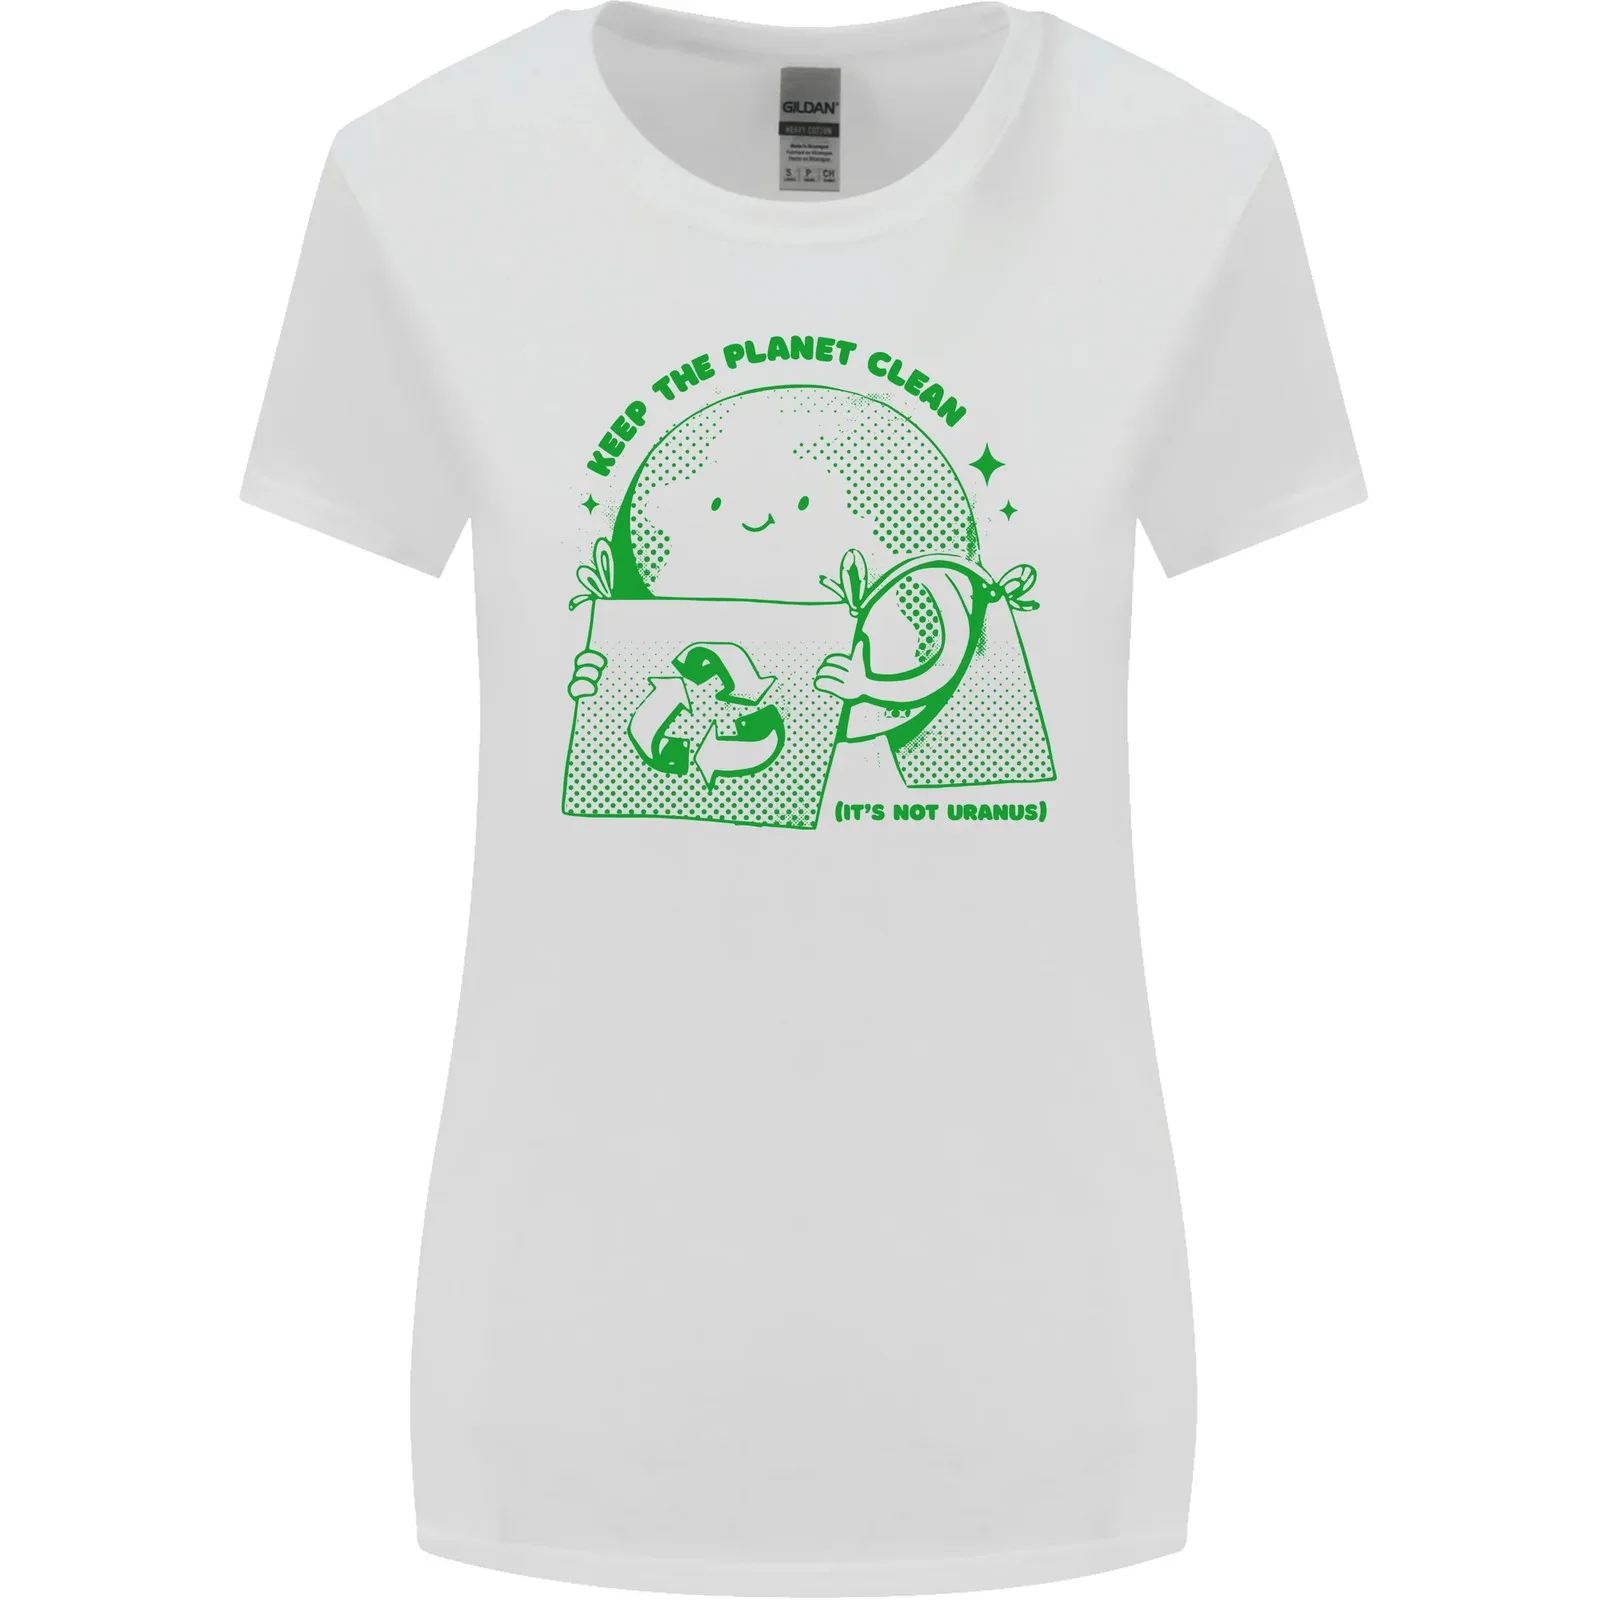 Изменение климата Сохраните планету в чистоте Женская футболка с длинным рукавом и широким кроем